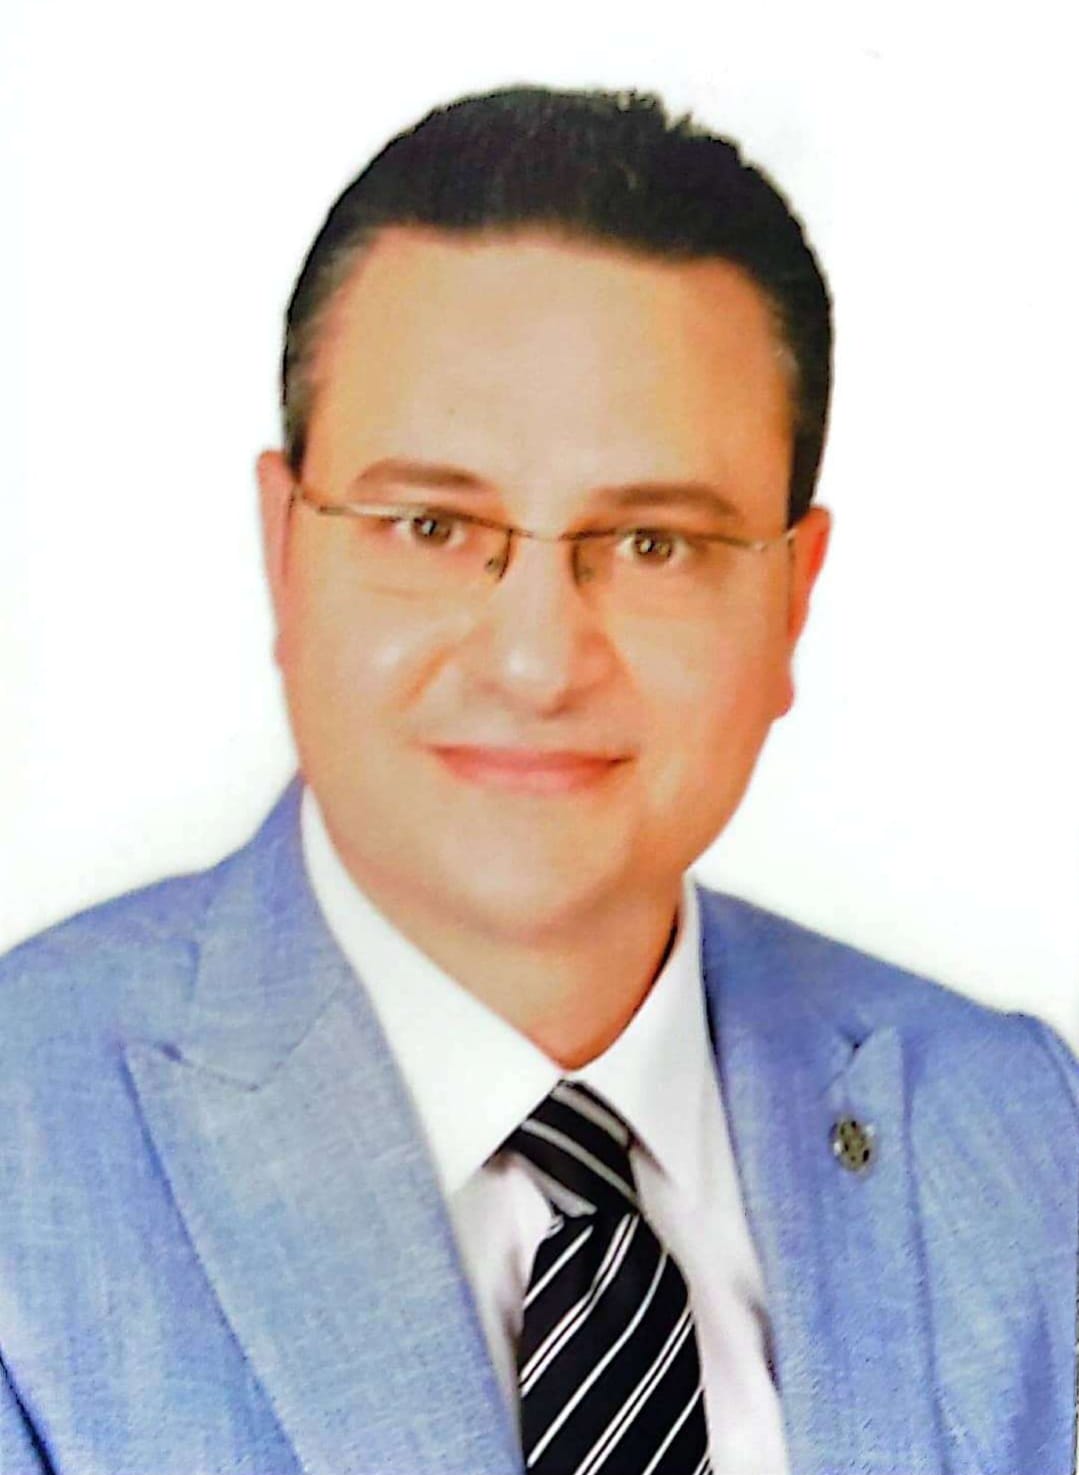 دكتور احمد الطحاوى